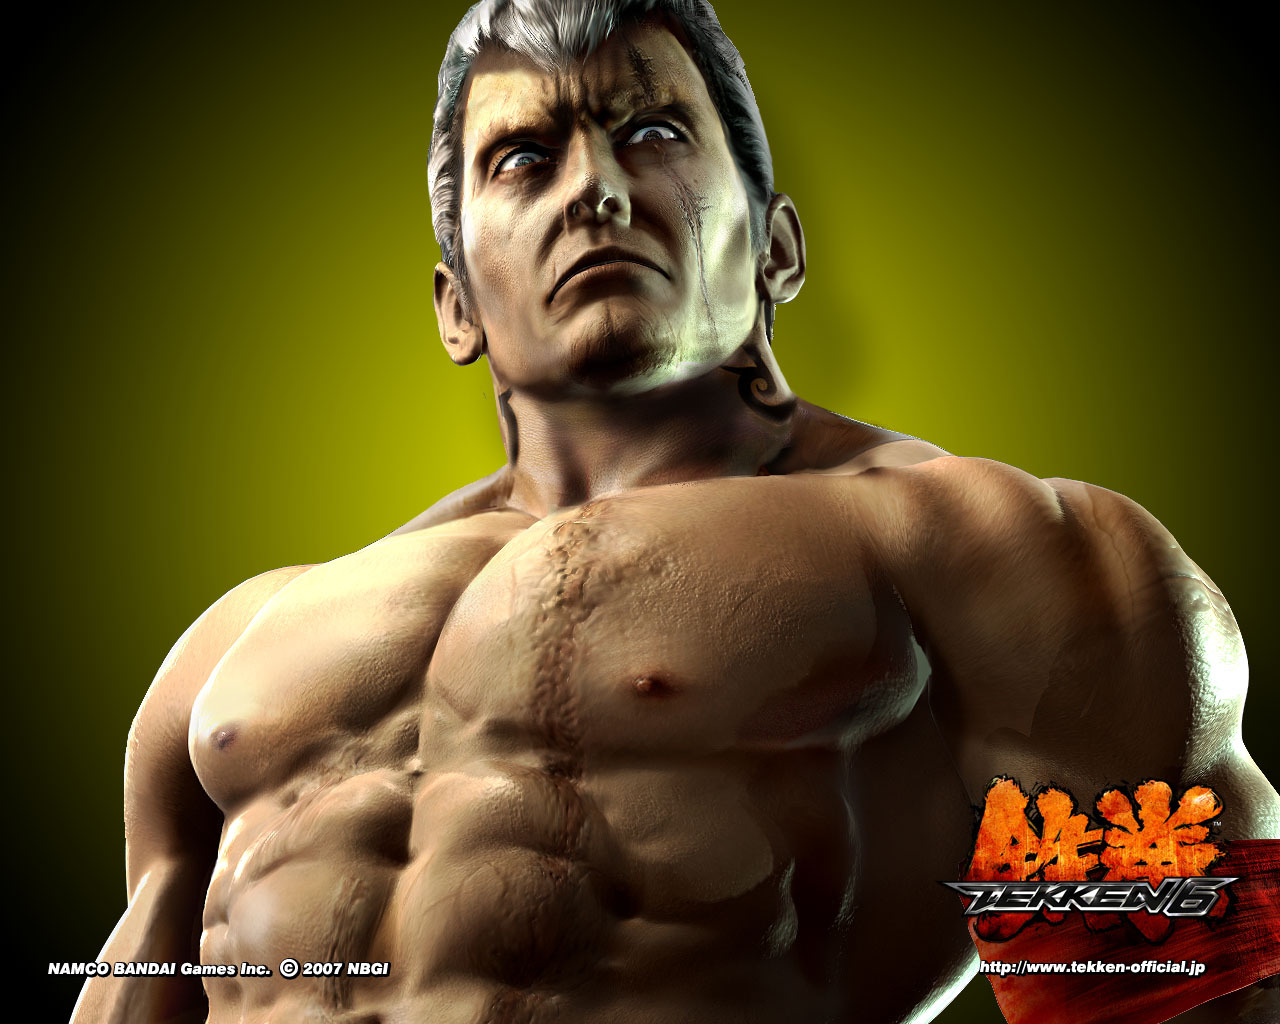 Descarga gratuita de fondo de pantalla para móvil de Juegos, Tekken.